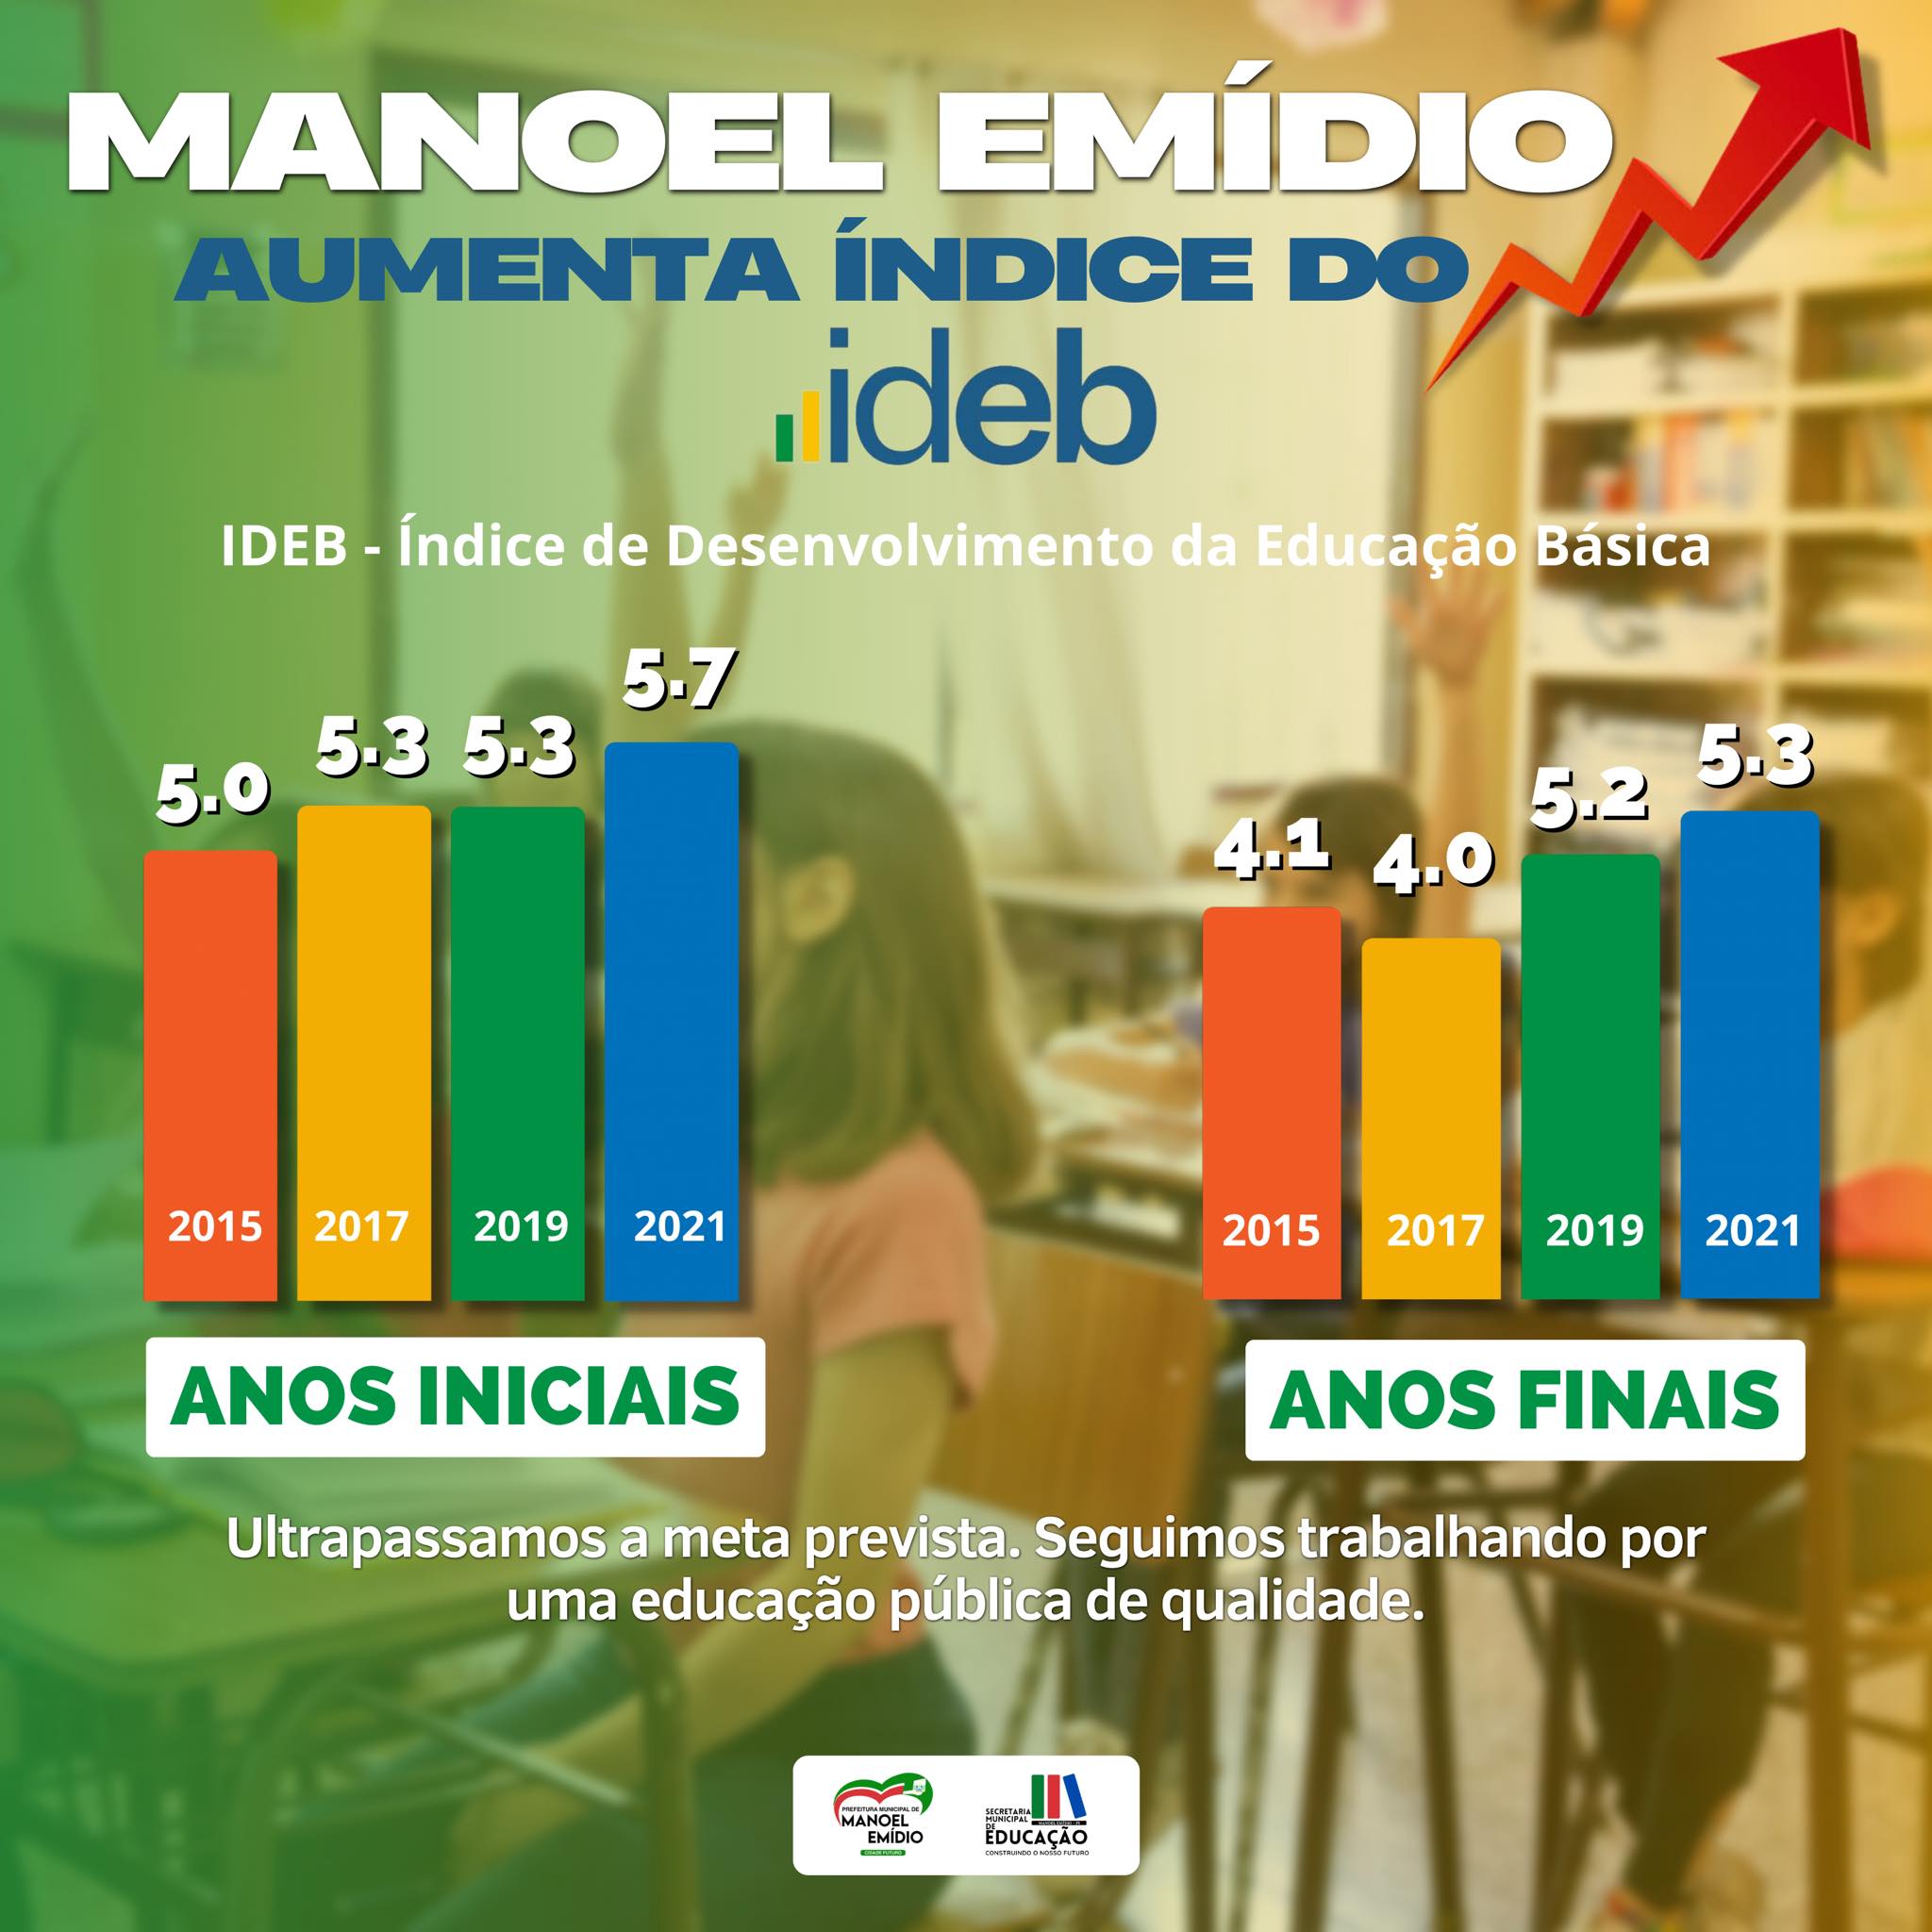 Manoel Emídio comemora aumento no índice do IDEB - Imagem 1